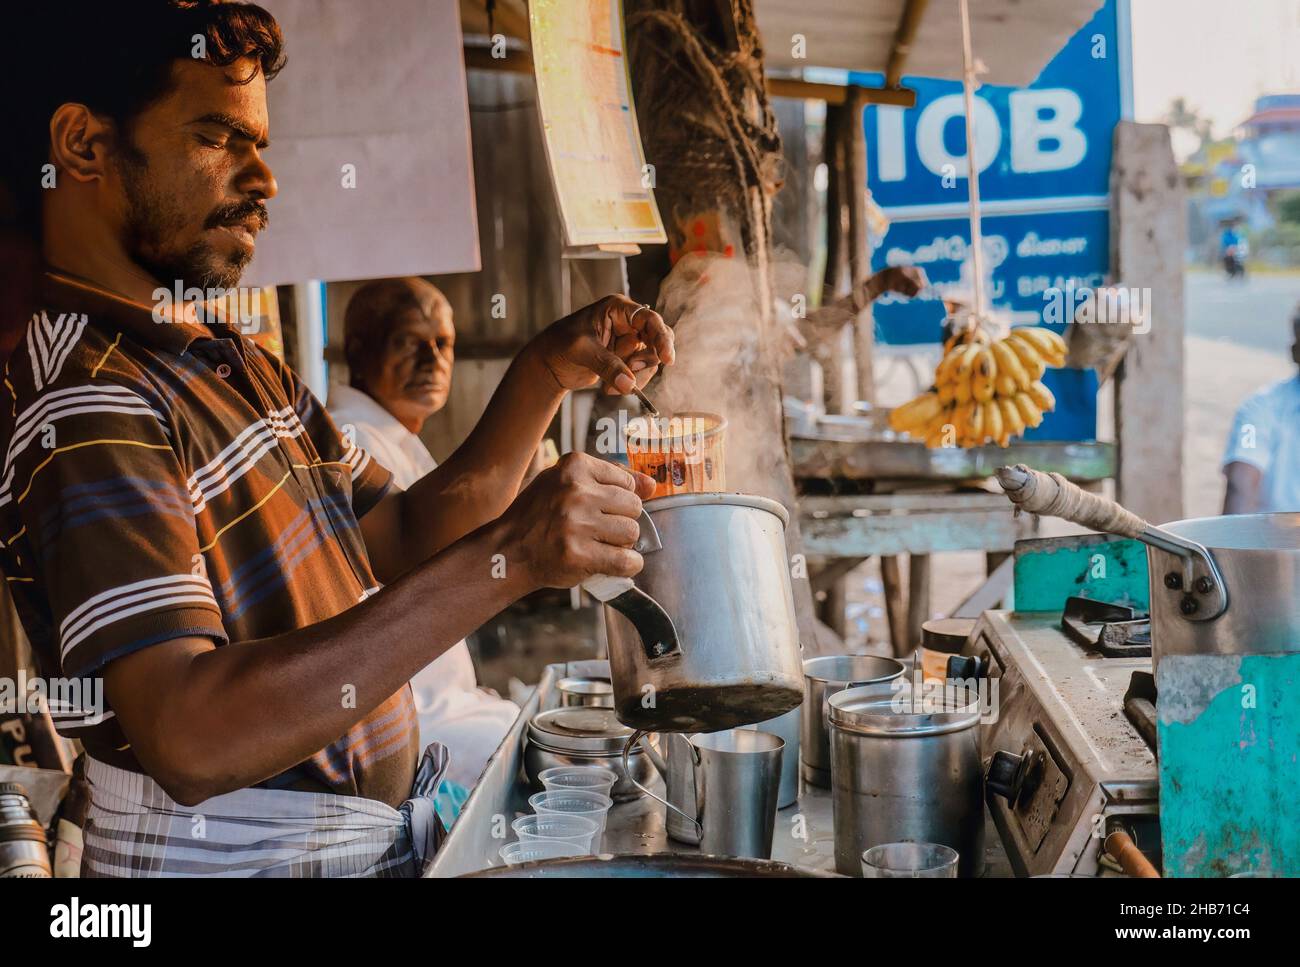 Tamil Nadu, Inde - 14 janvier 2016.Un homme prépare une casserole de thé chai à un stand de nourriture en bord de route, à la lumière du matin. Banque D'Images